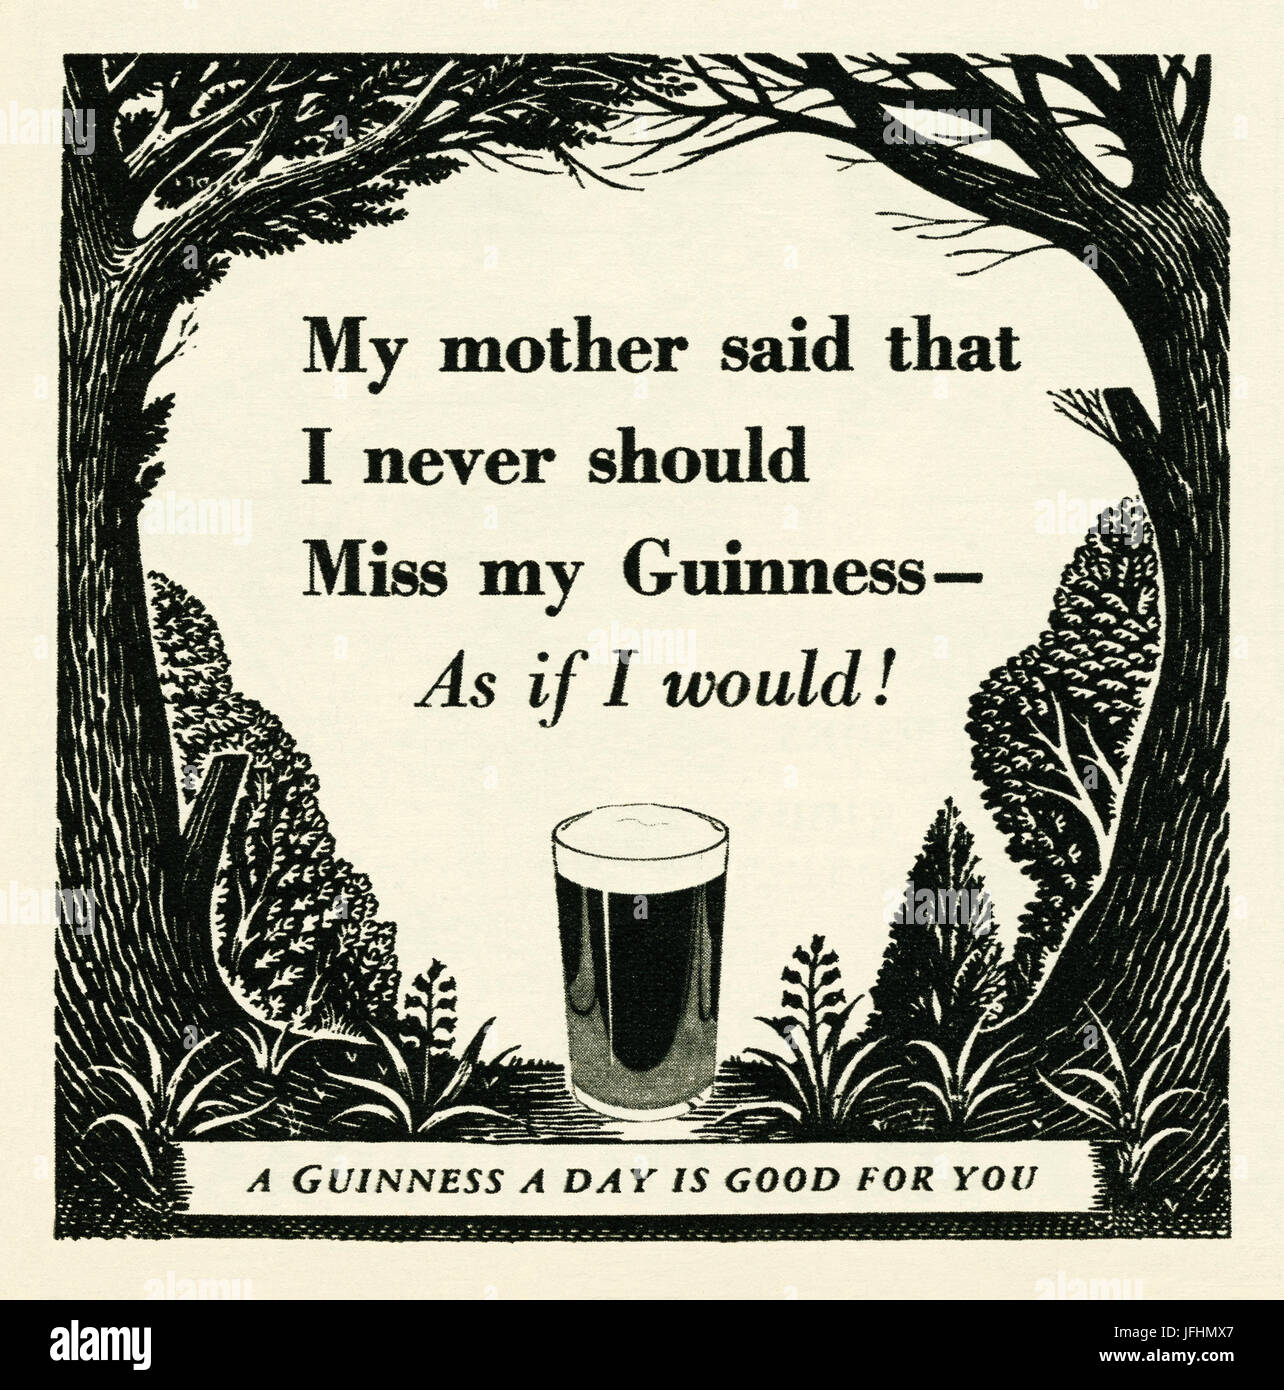 Un annuncio per una Guinness Birra stout - è apparso in una rivista pubblicata nel Regno Unito nel 1946. L'annuncio suggerisce che una Guinness un giorno è 'buon per voi" Foto Stock